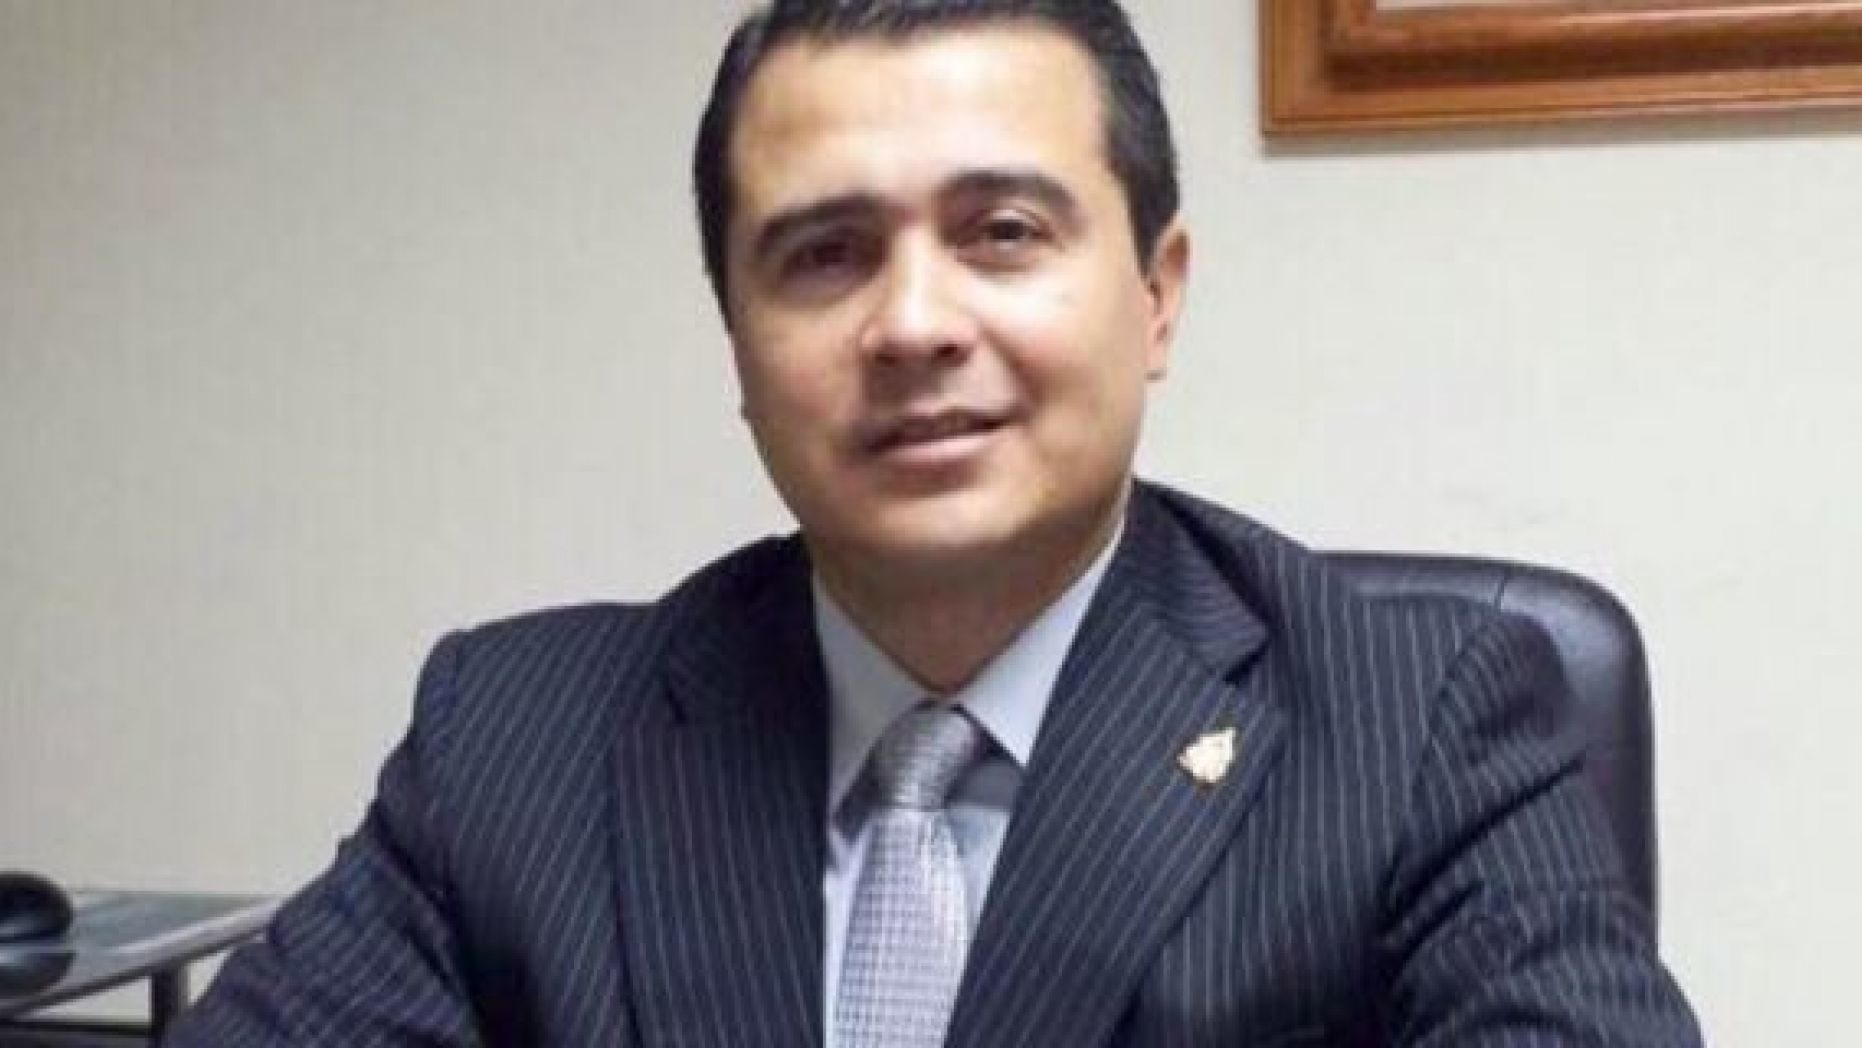 Juan Antonio Hernandez Alvarado